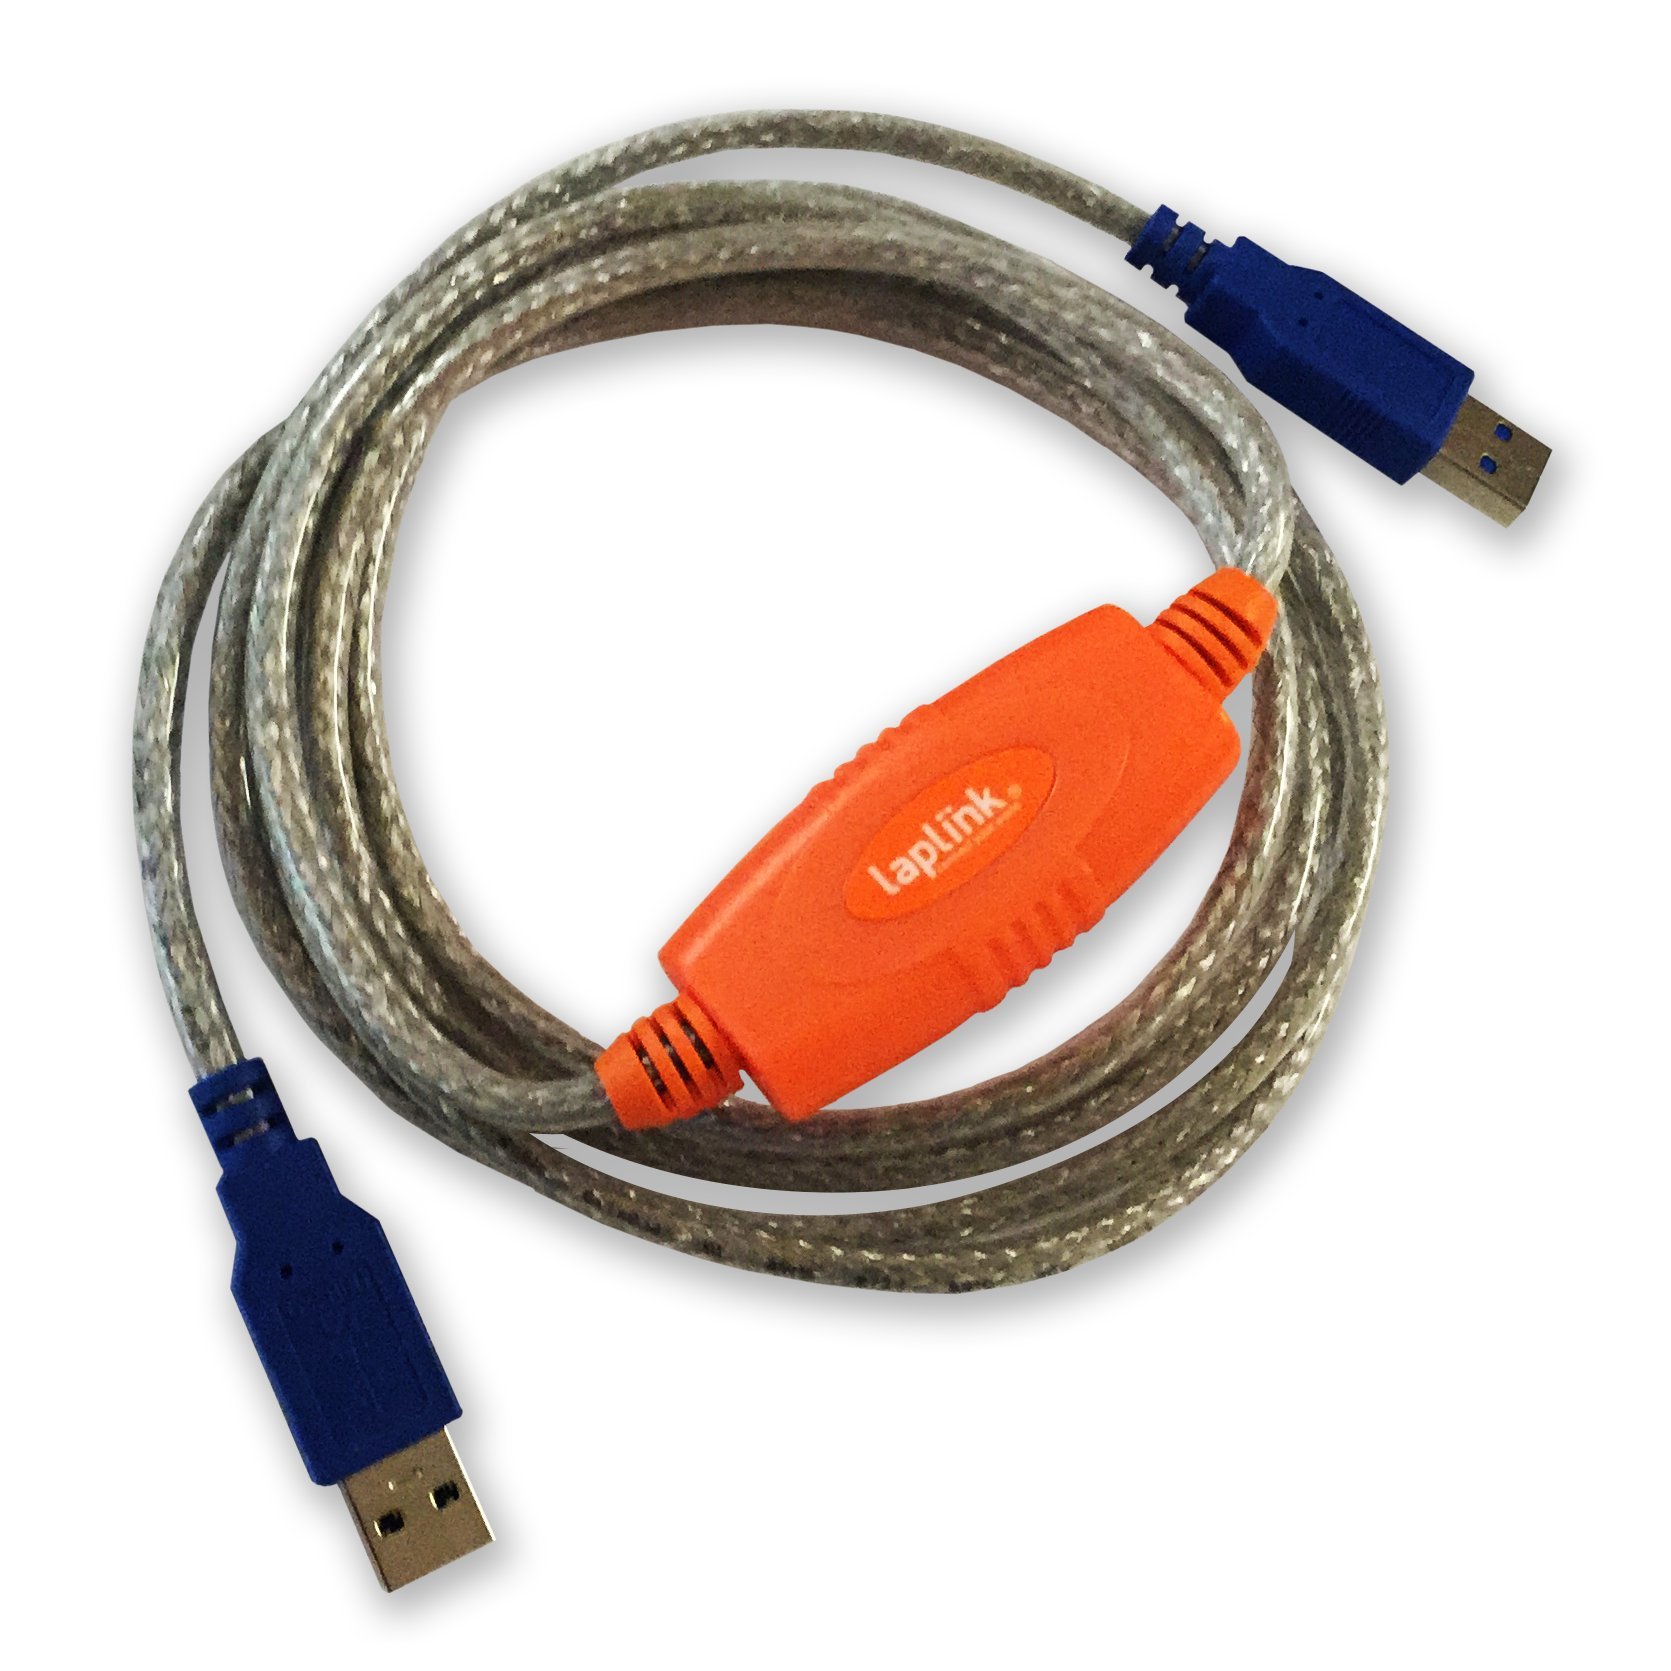 LAPLINK USB 3.0 Super Speed Kabel – 5 Gbit Transferkabel für PCmover, 5.000 Mbit USB 3.0 Kabel, Datenkabel, USB Port, Typ A Stecker, 1.80 m - 1 STK